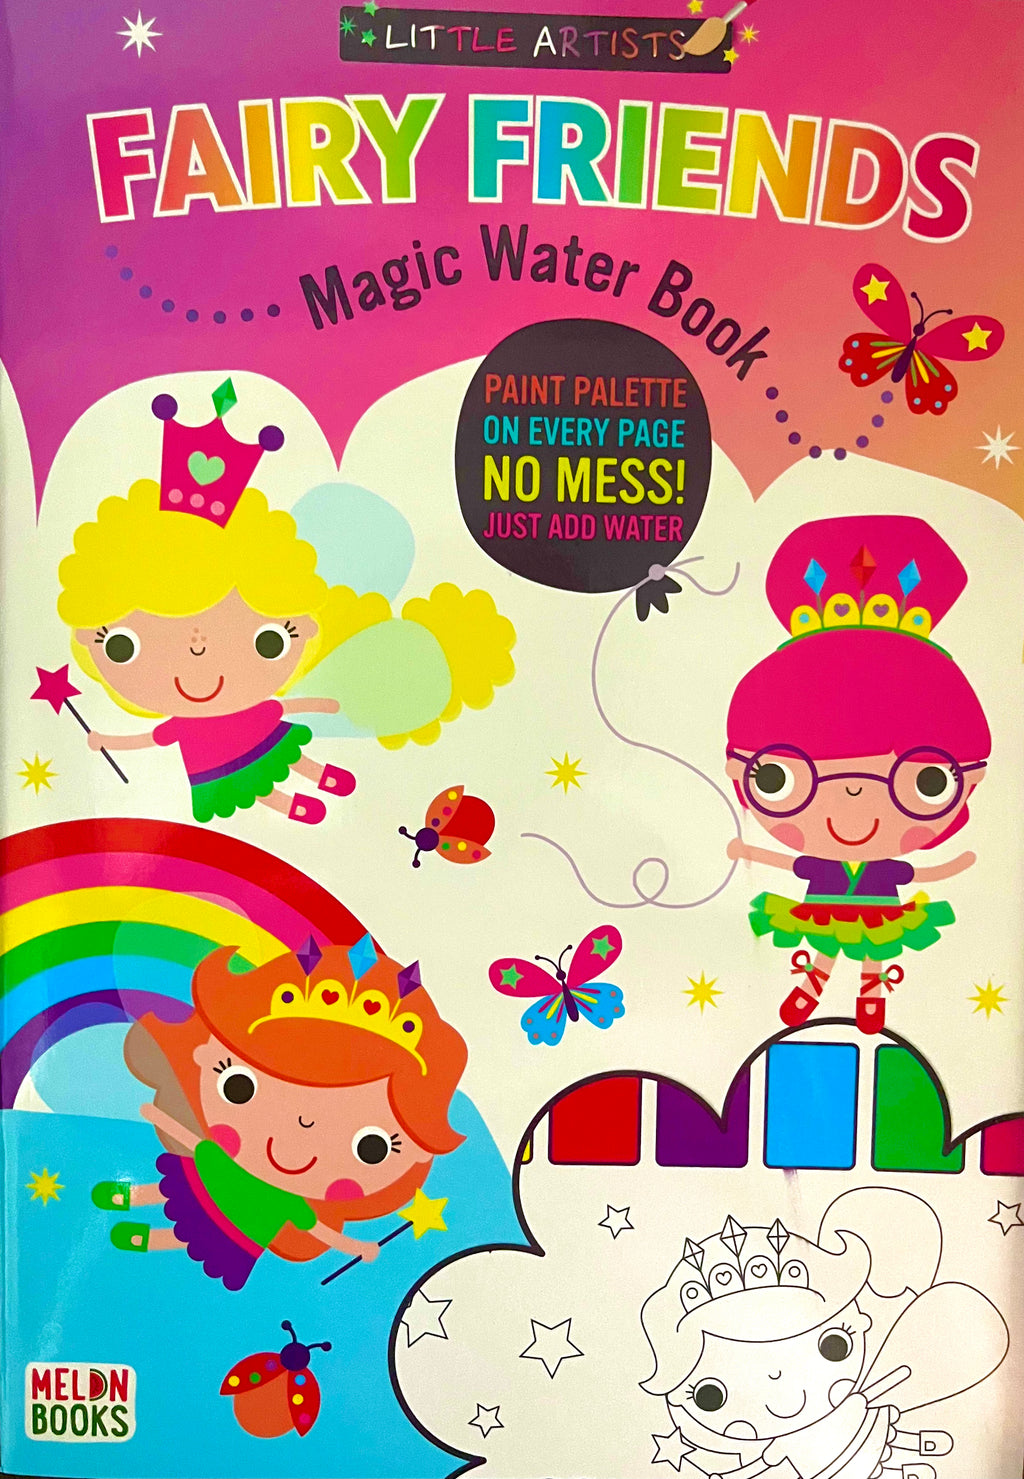 Little Artists: Fairy Friends (Magic Water Book)